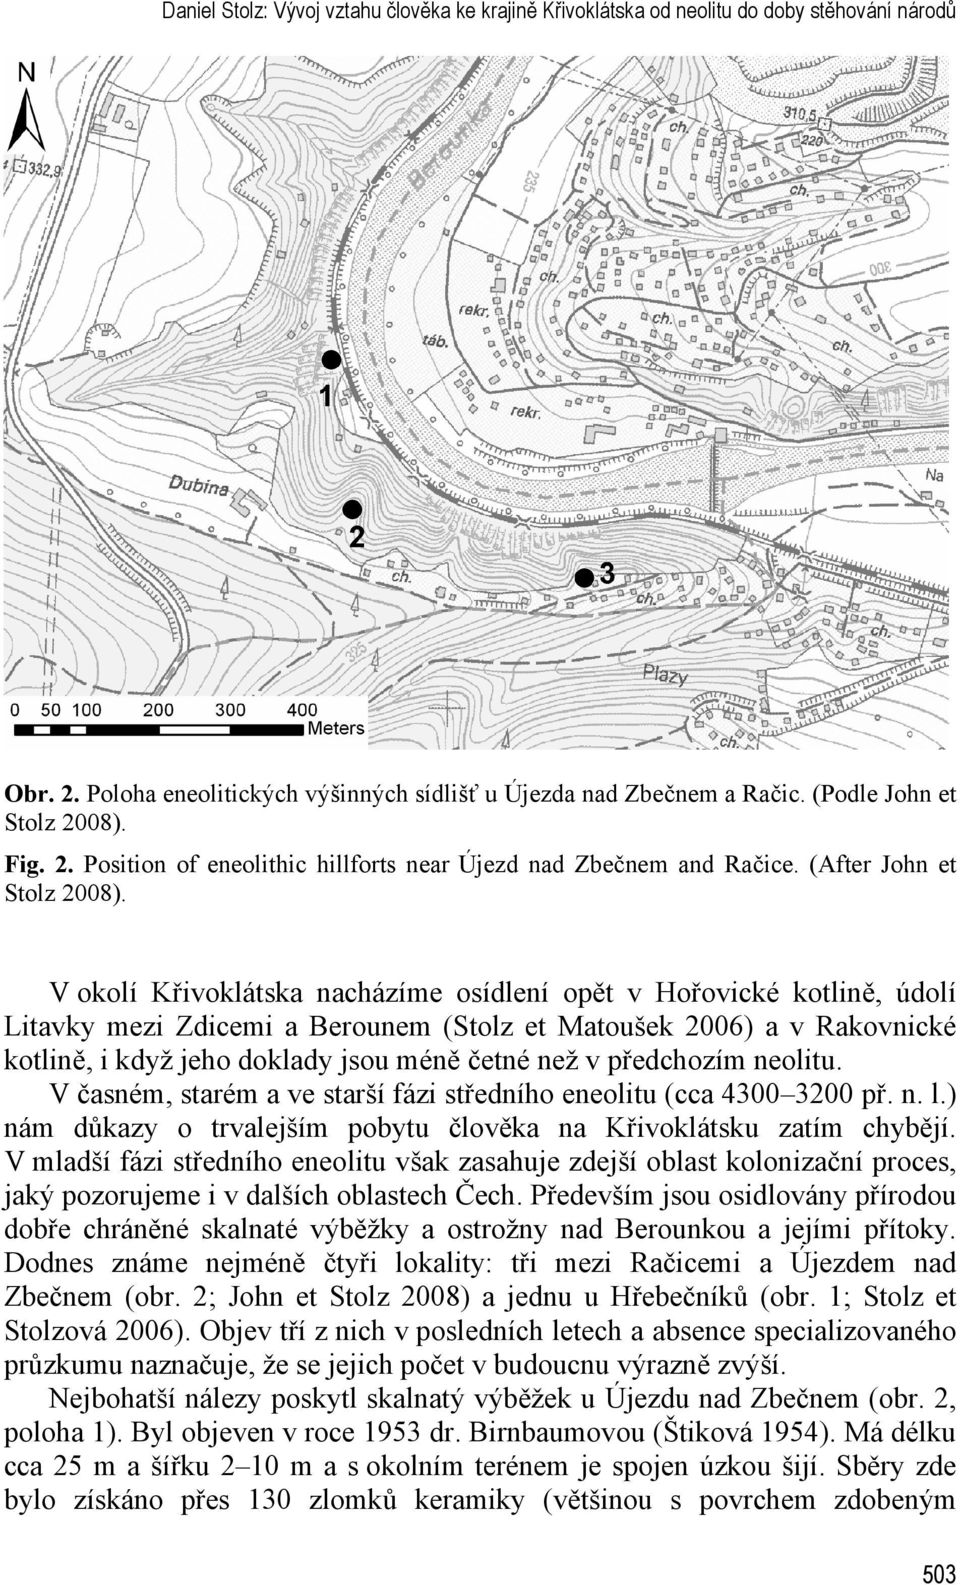 V okolí Křivoklátska nacházíme osídlení opět v Hořovické kotlině, údolí Litavky mezi Zdicemi a Berounem (Stolz et Matoušek 2006) a v Rakovnické kotlině, i když jeho doklady jsou méně četné než v